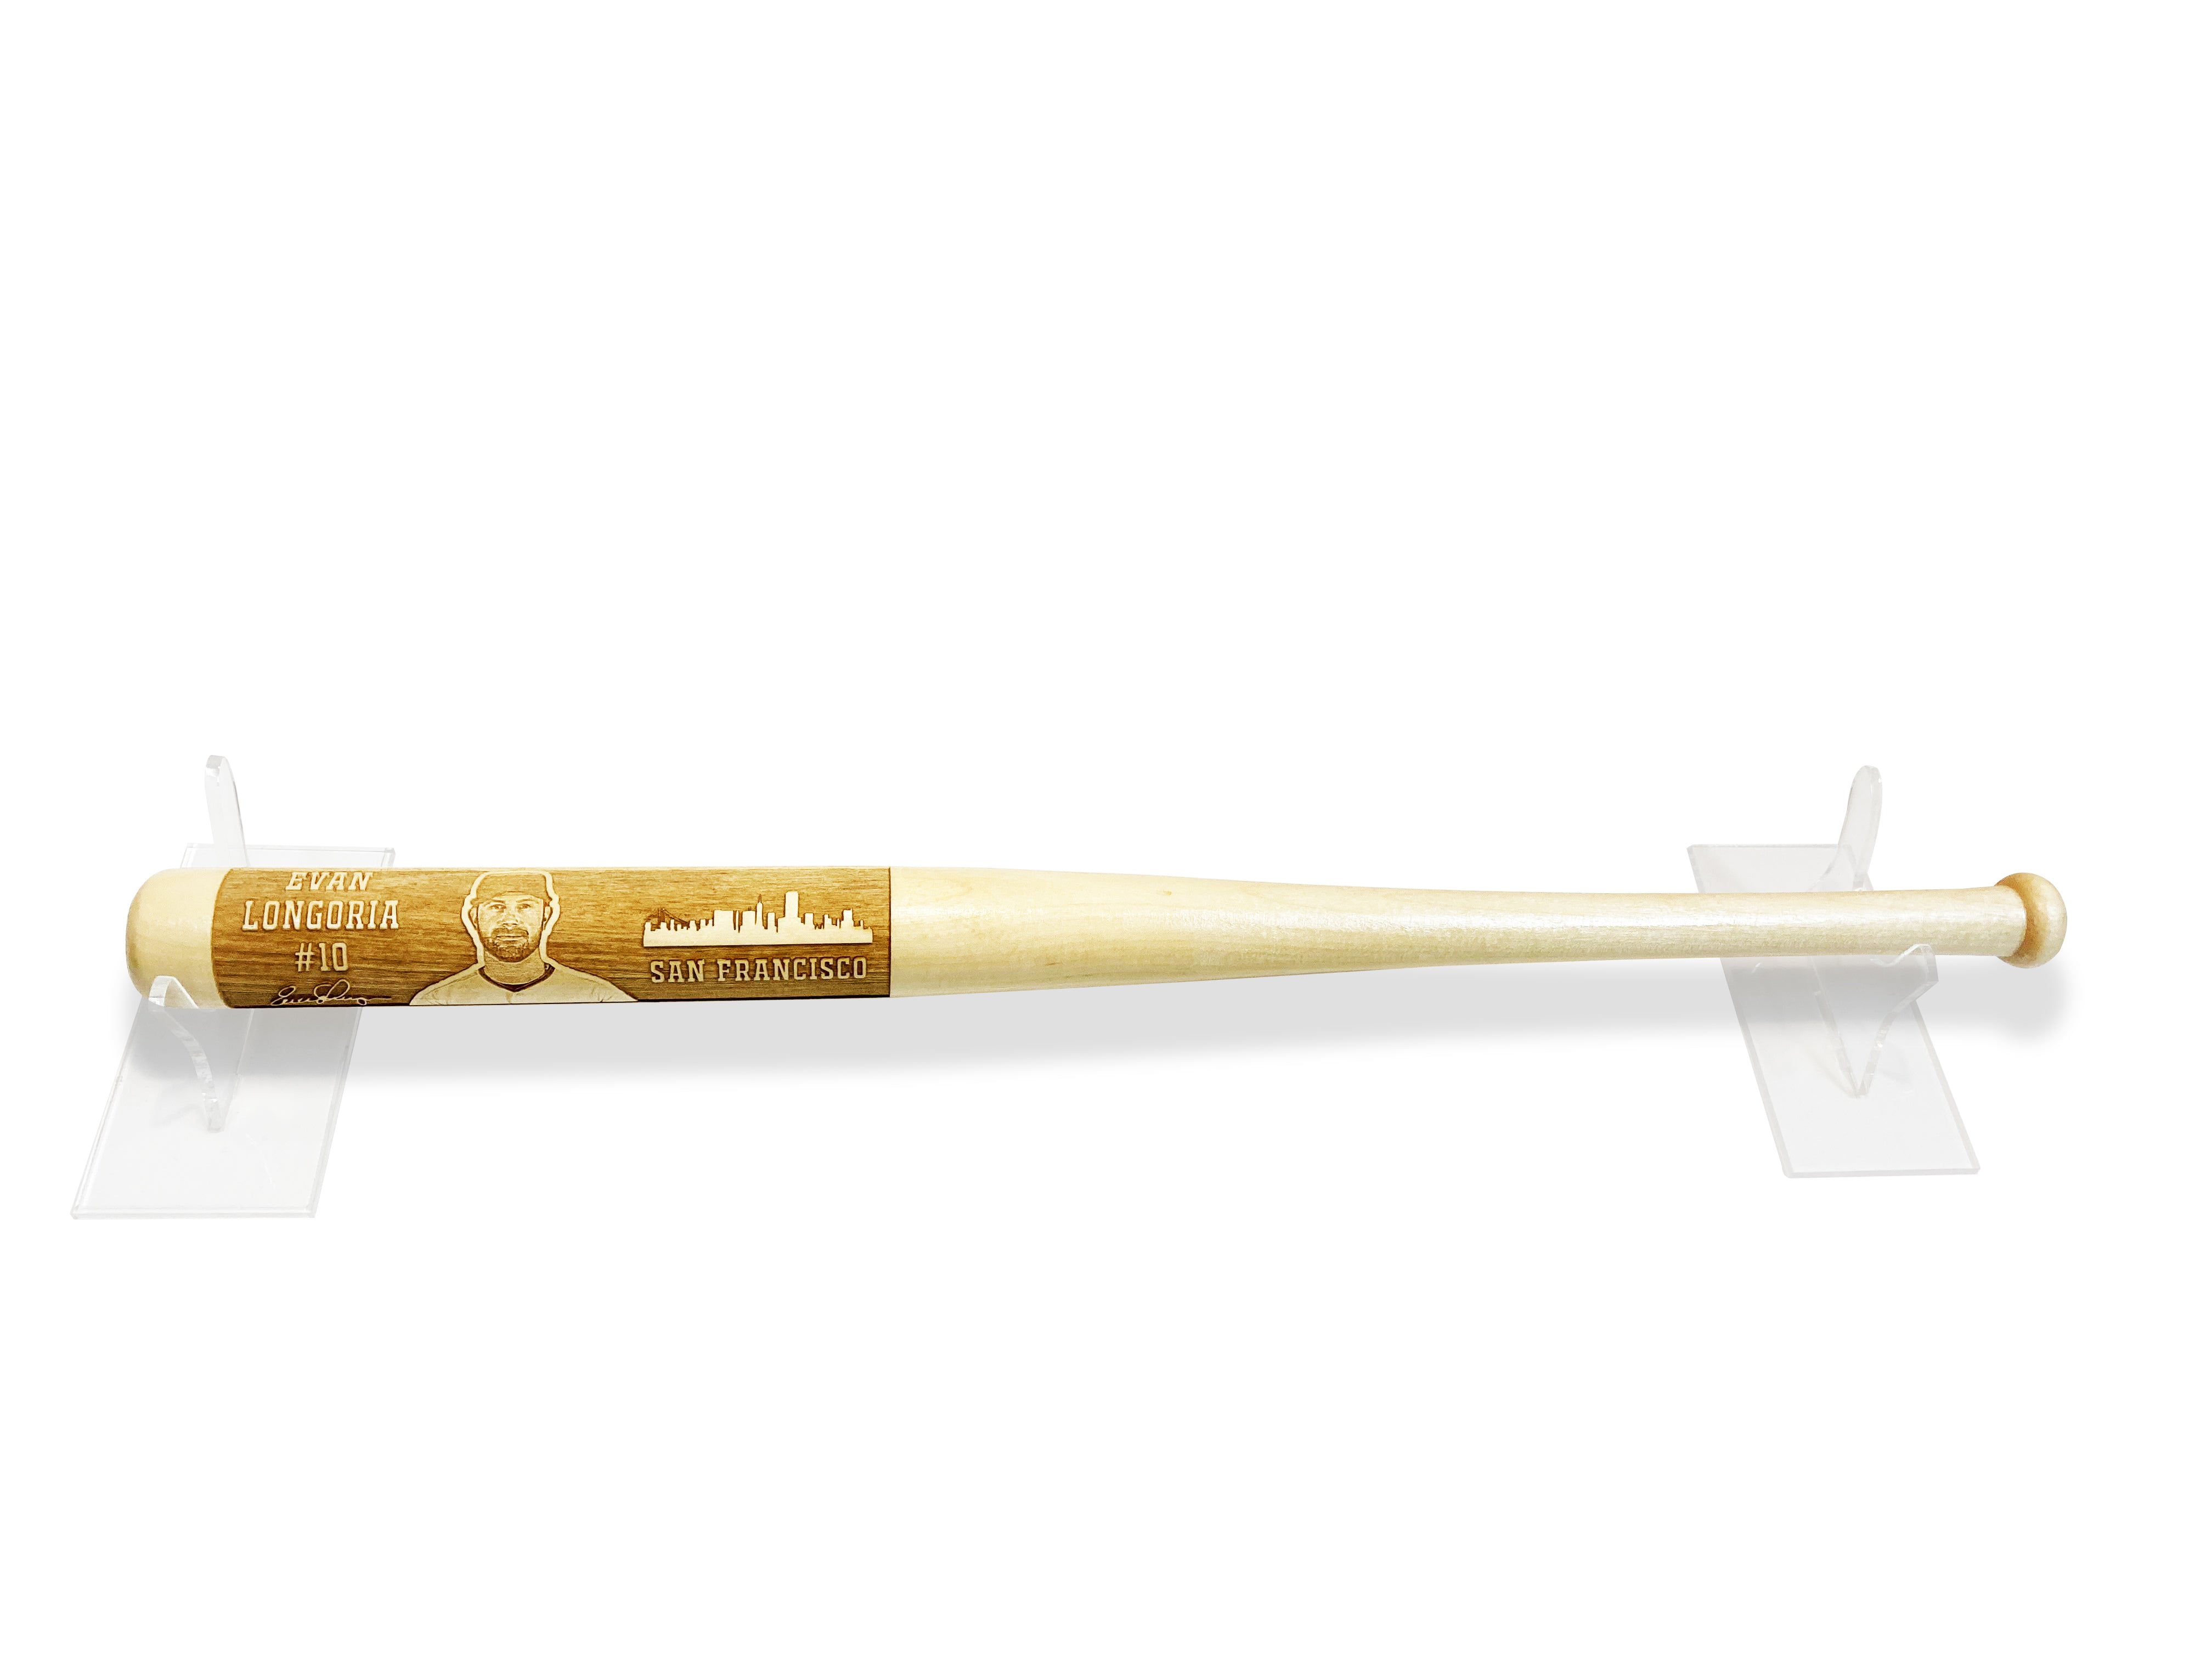 Evan Longoria Laser-Engraved Wood Baseball Bat